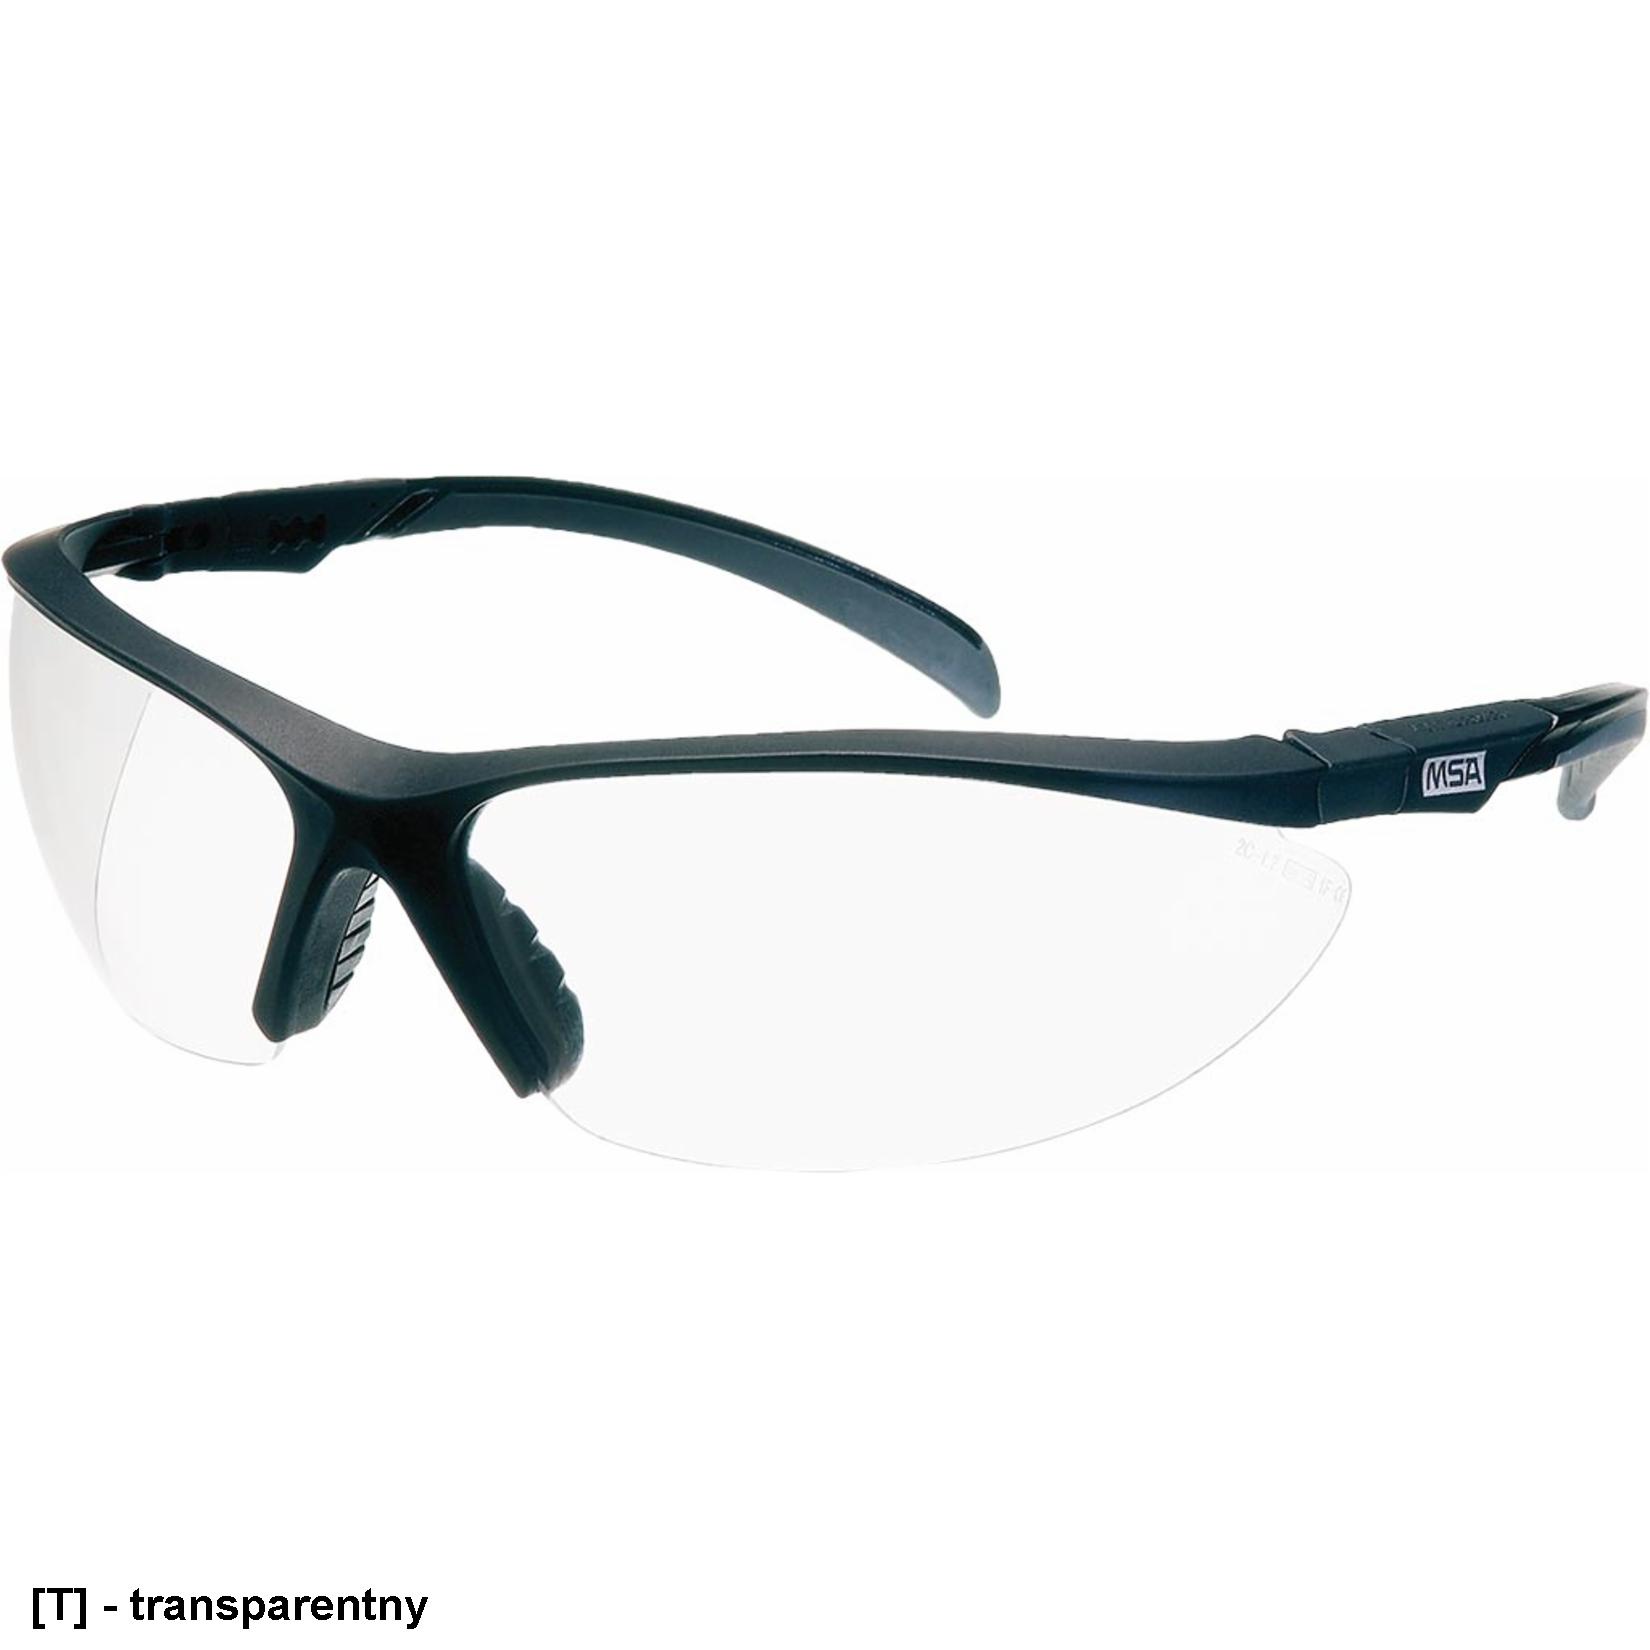 MSA-OO-PER1320-F - okulary ochronne, zakrzywiony panoramiczny kształt soczewek.